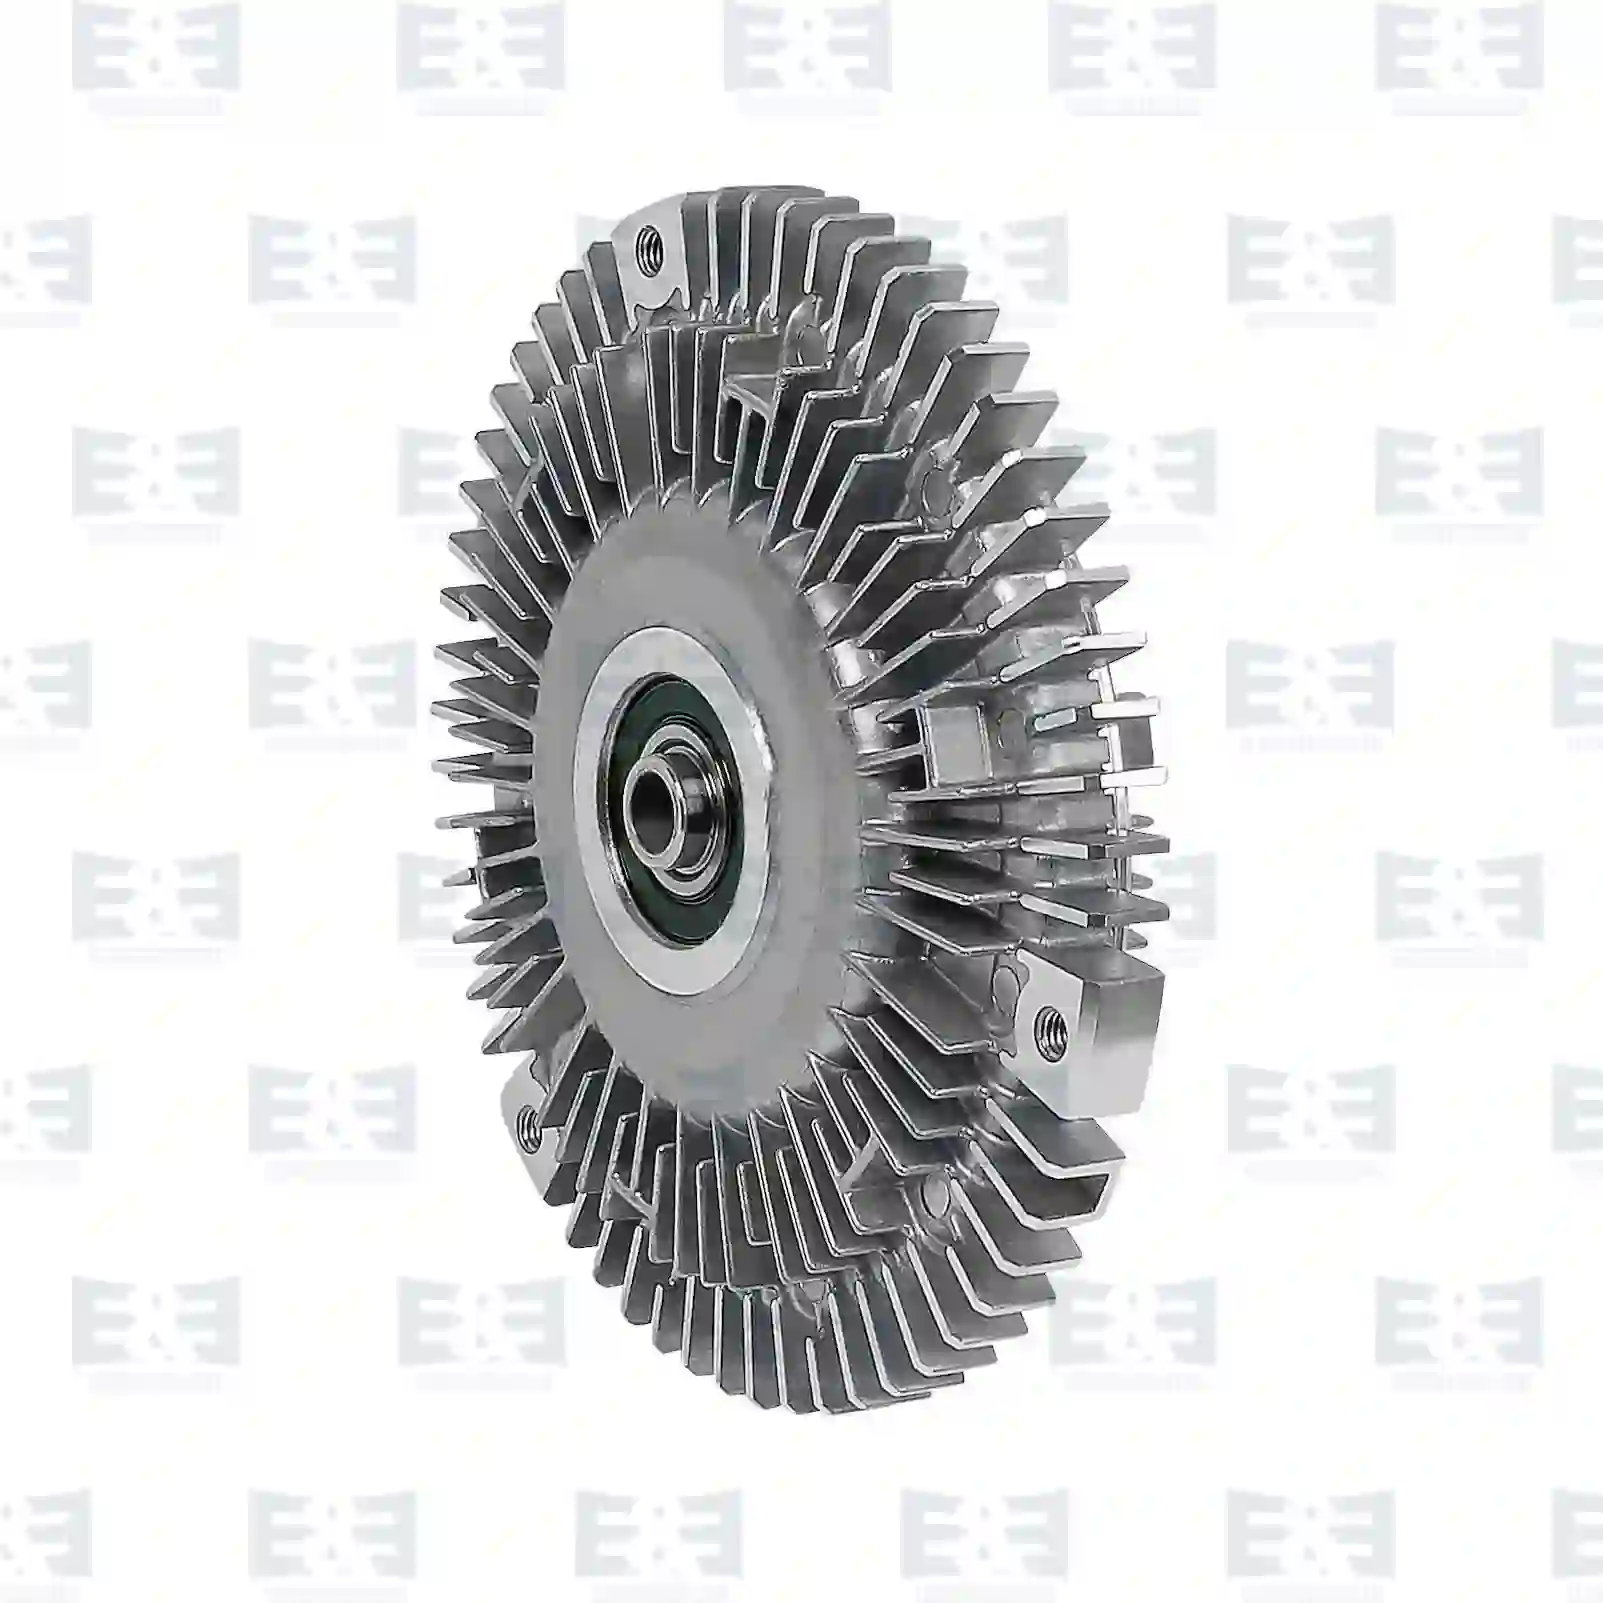  Fan clutch || E&E Truck Spare Parts | Truck Spare Parts, Auotomotive Spare Parts